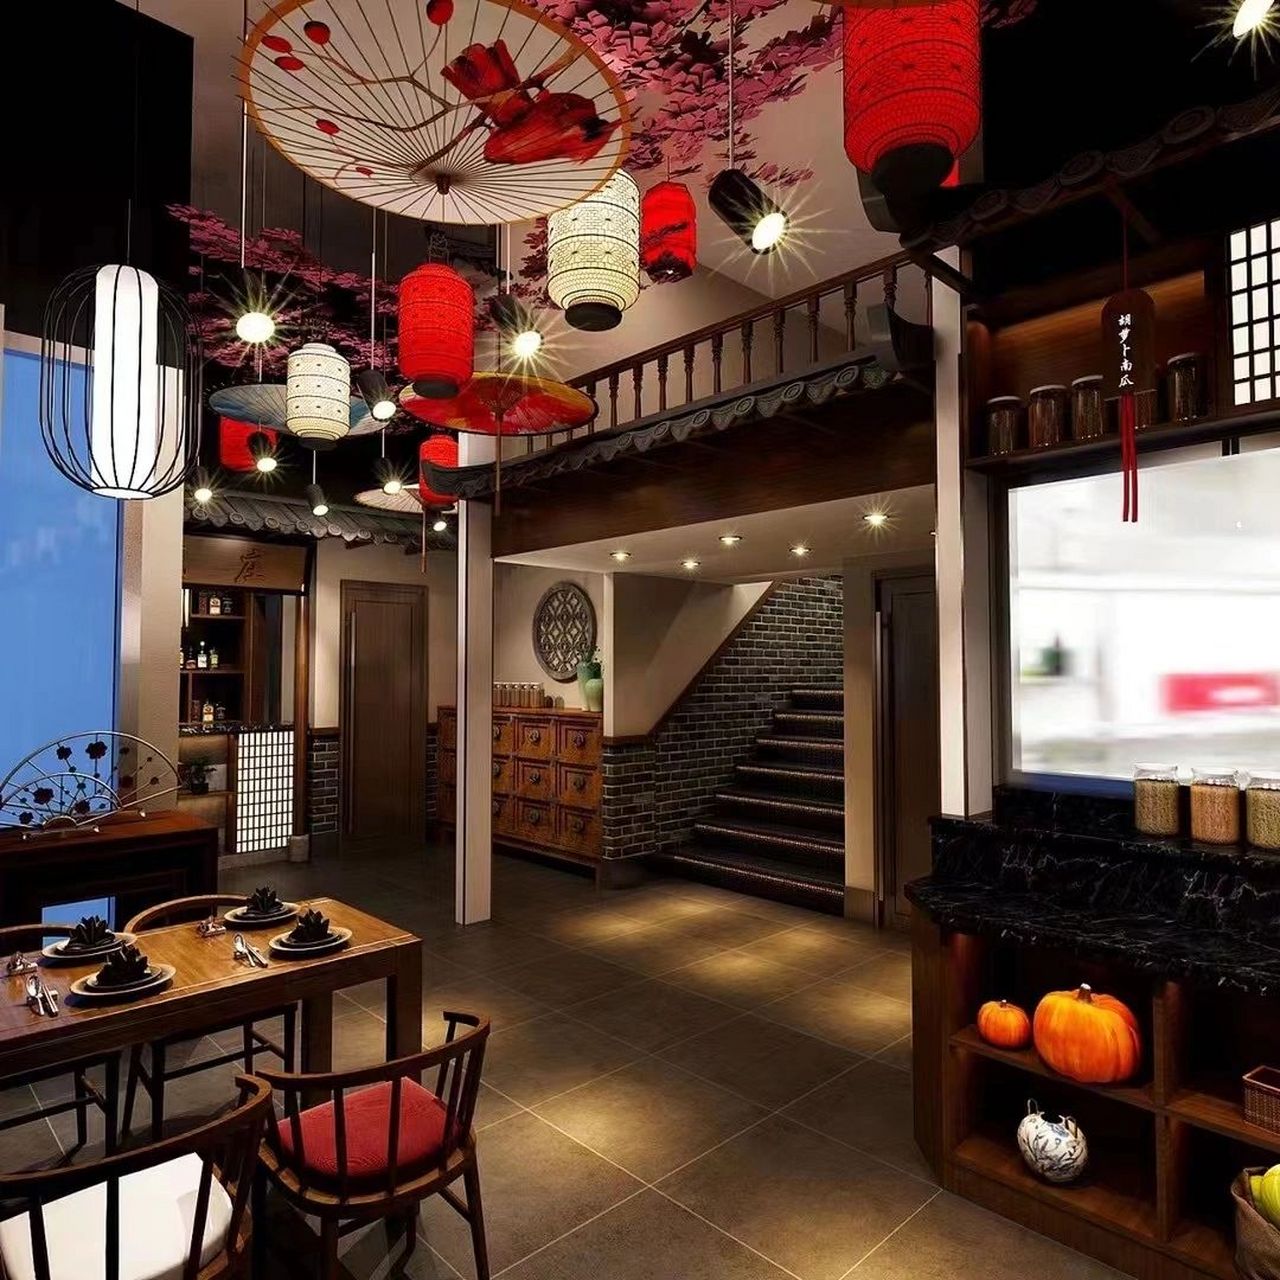 中式餐厅效果图欣赏 餐厅的设计是中式风格给人一种庄严,典雅